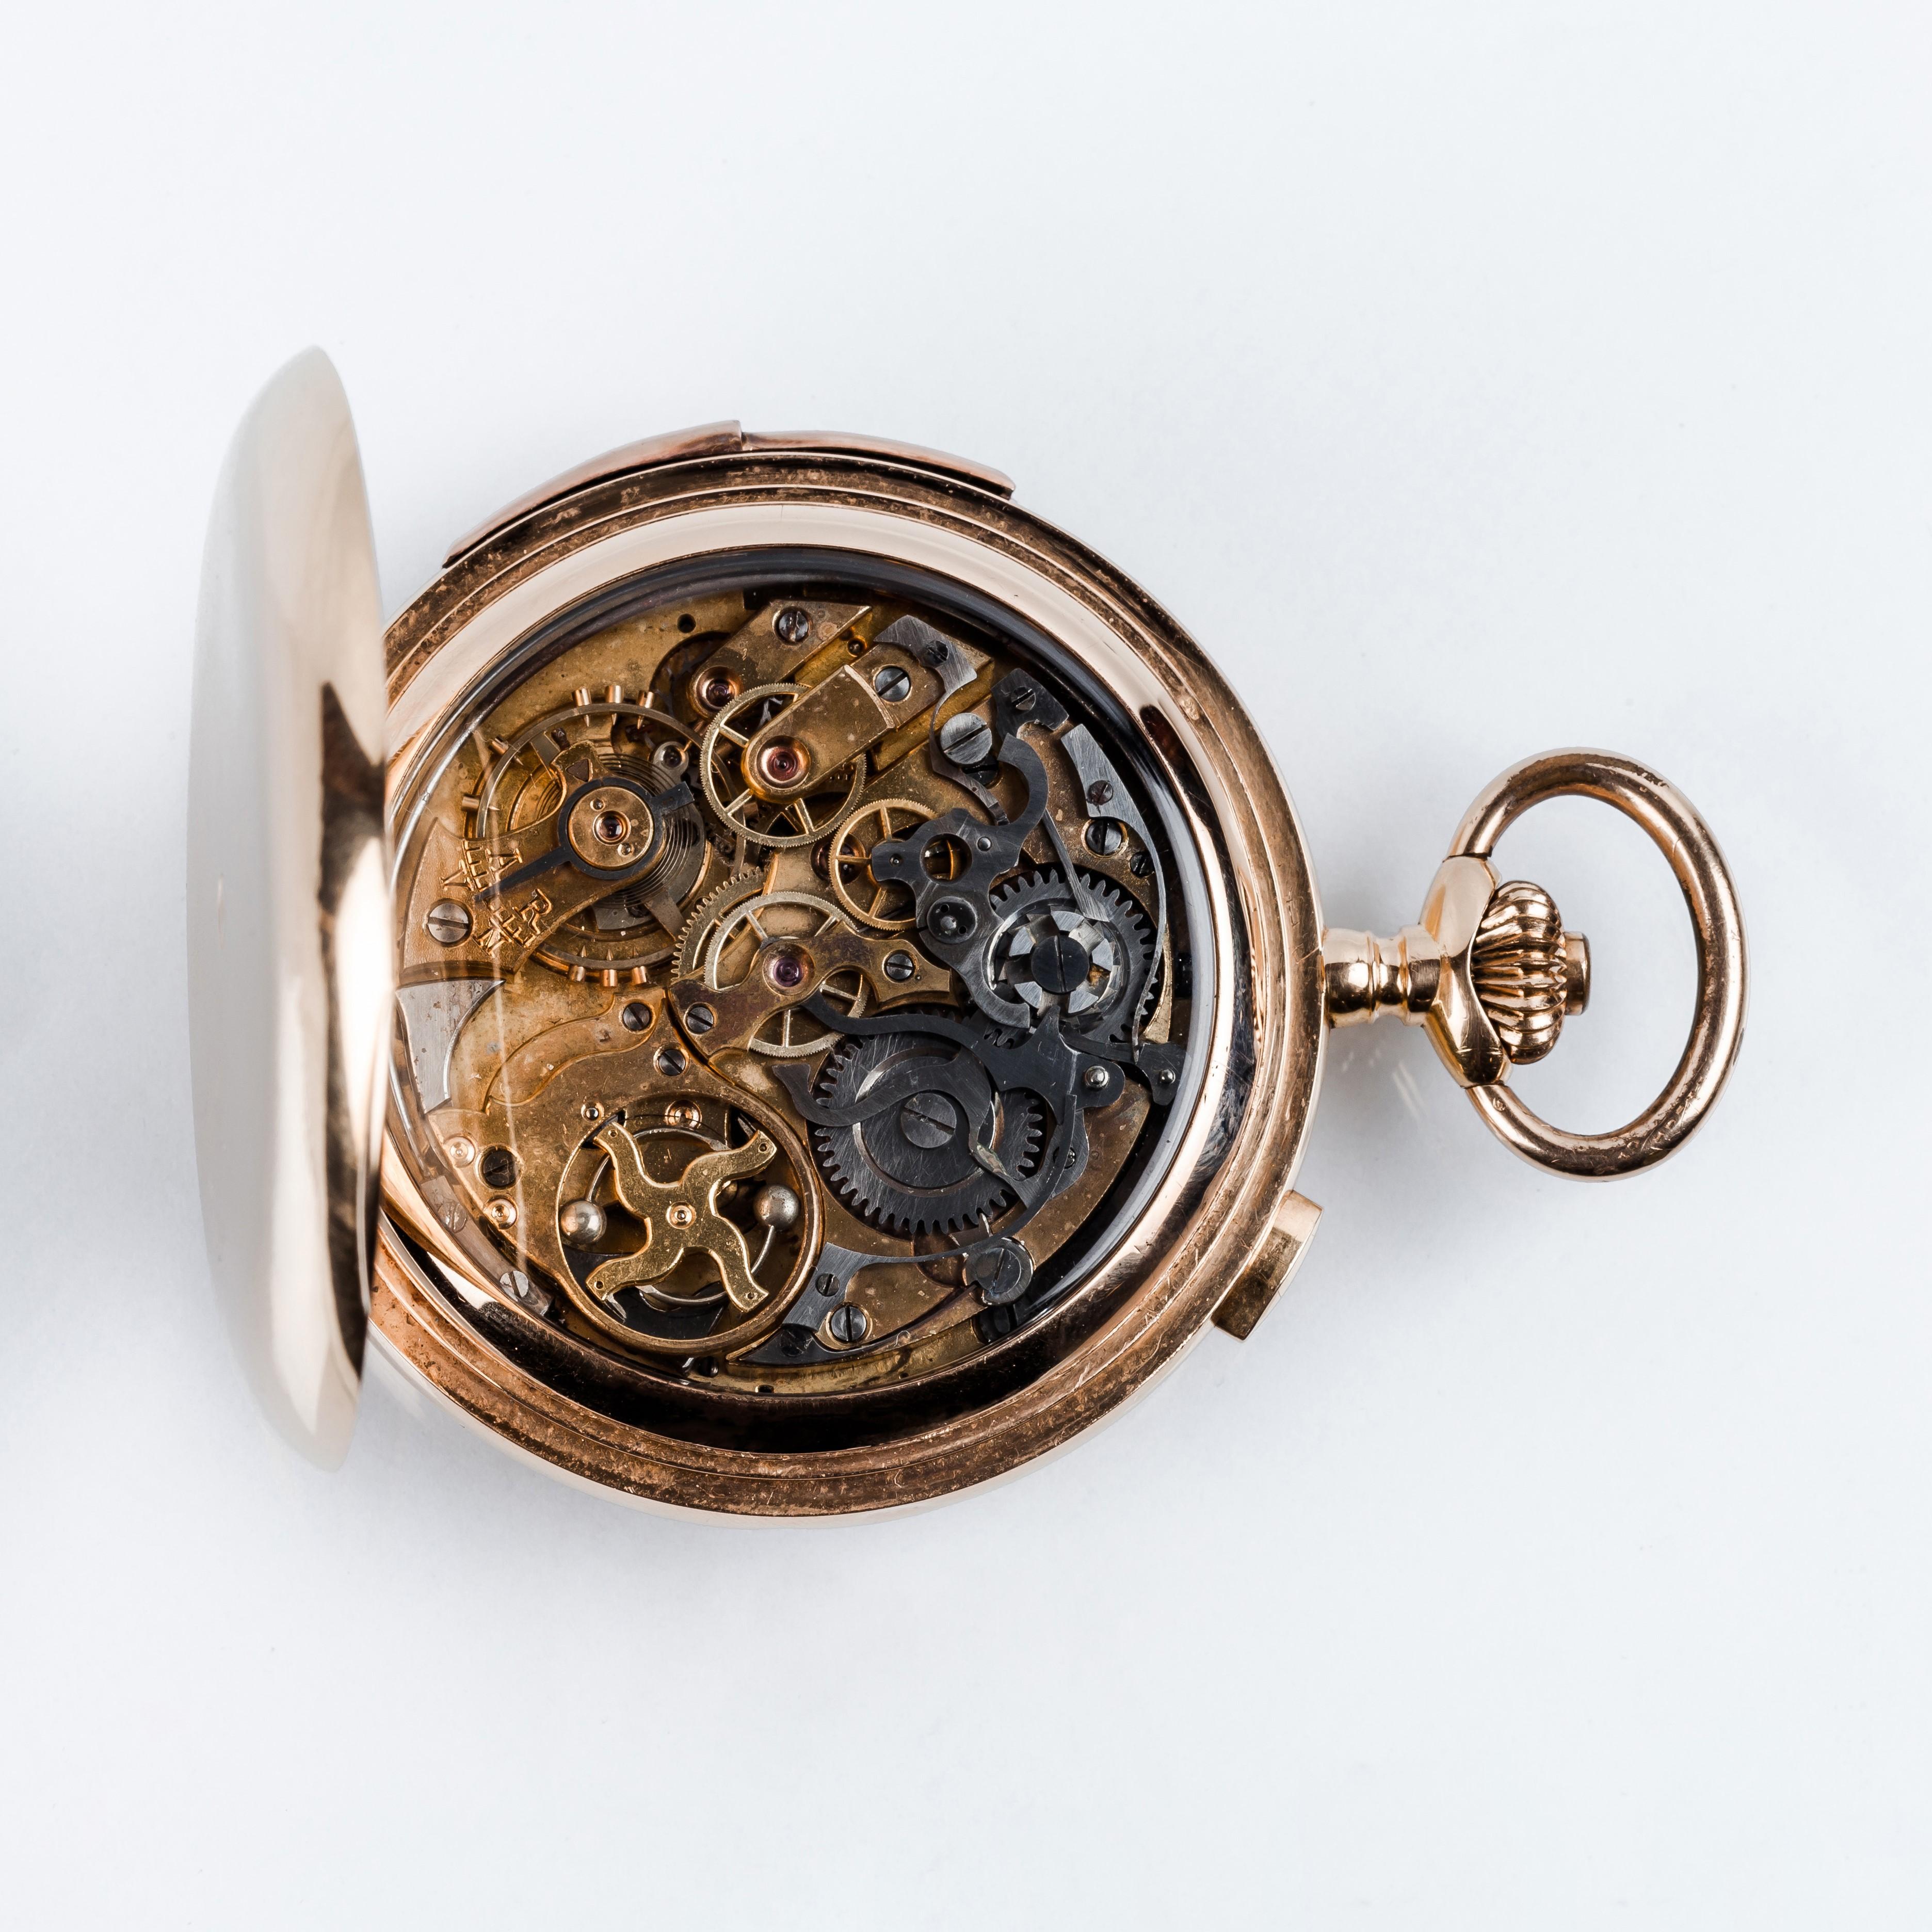 18K Rose Gold Hunter-Gehäuse Schweizer Taschenuhr ANGELUS #40283.
Cronograph mit Uhr- und Viertelstundenschlag auf Anfrage.
58 mm/2,28 Zoll Gehäuse mit drei Deckeln aus Rotgold.
Außendeckel aus Guillochè, Hauptdeckel mit zentraler Plakette und